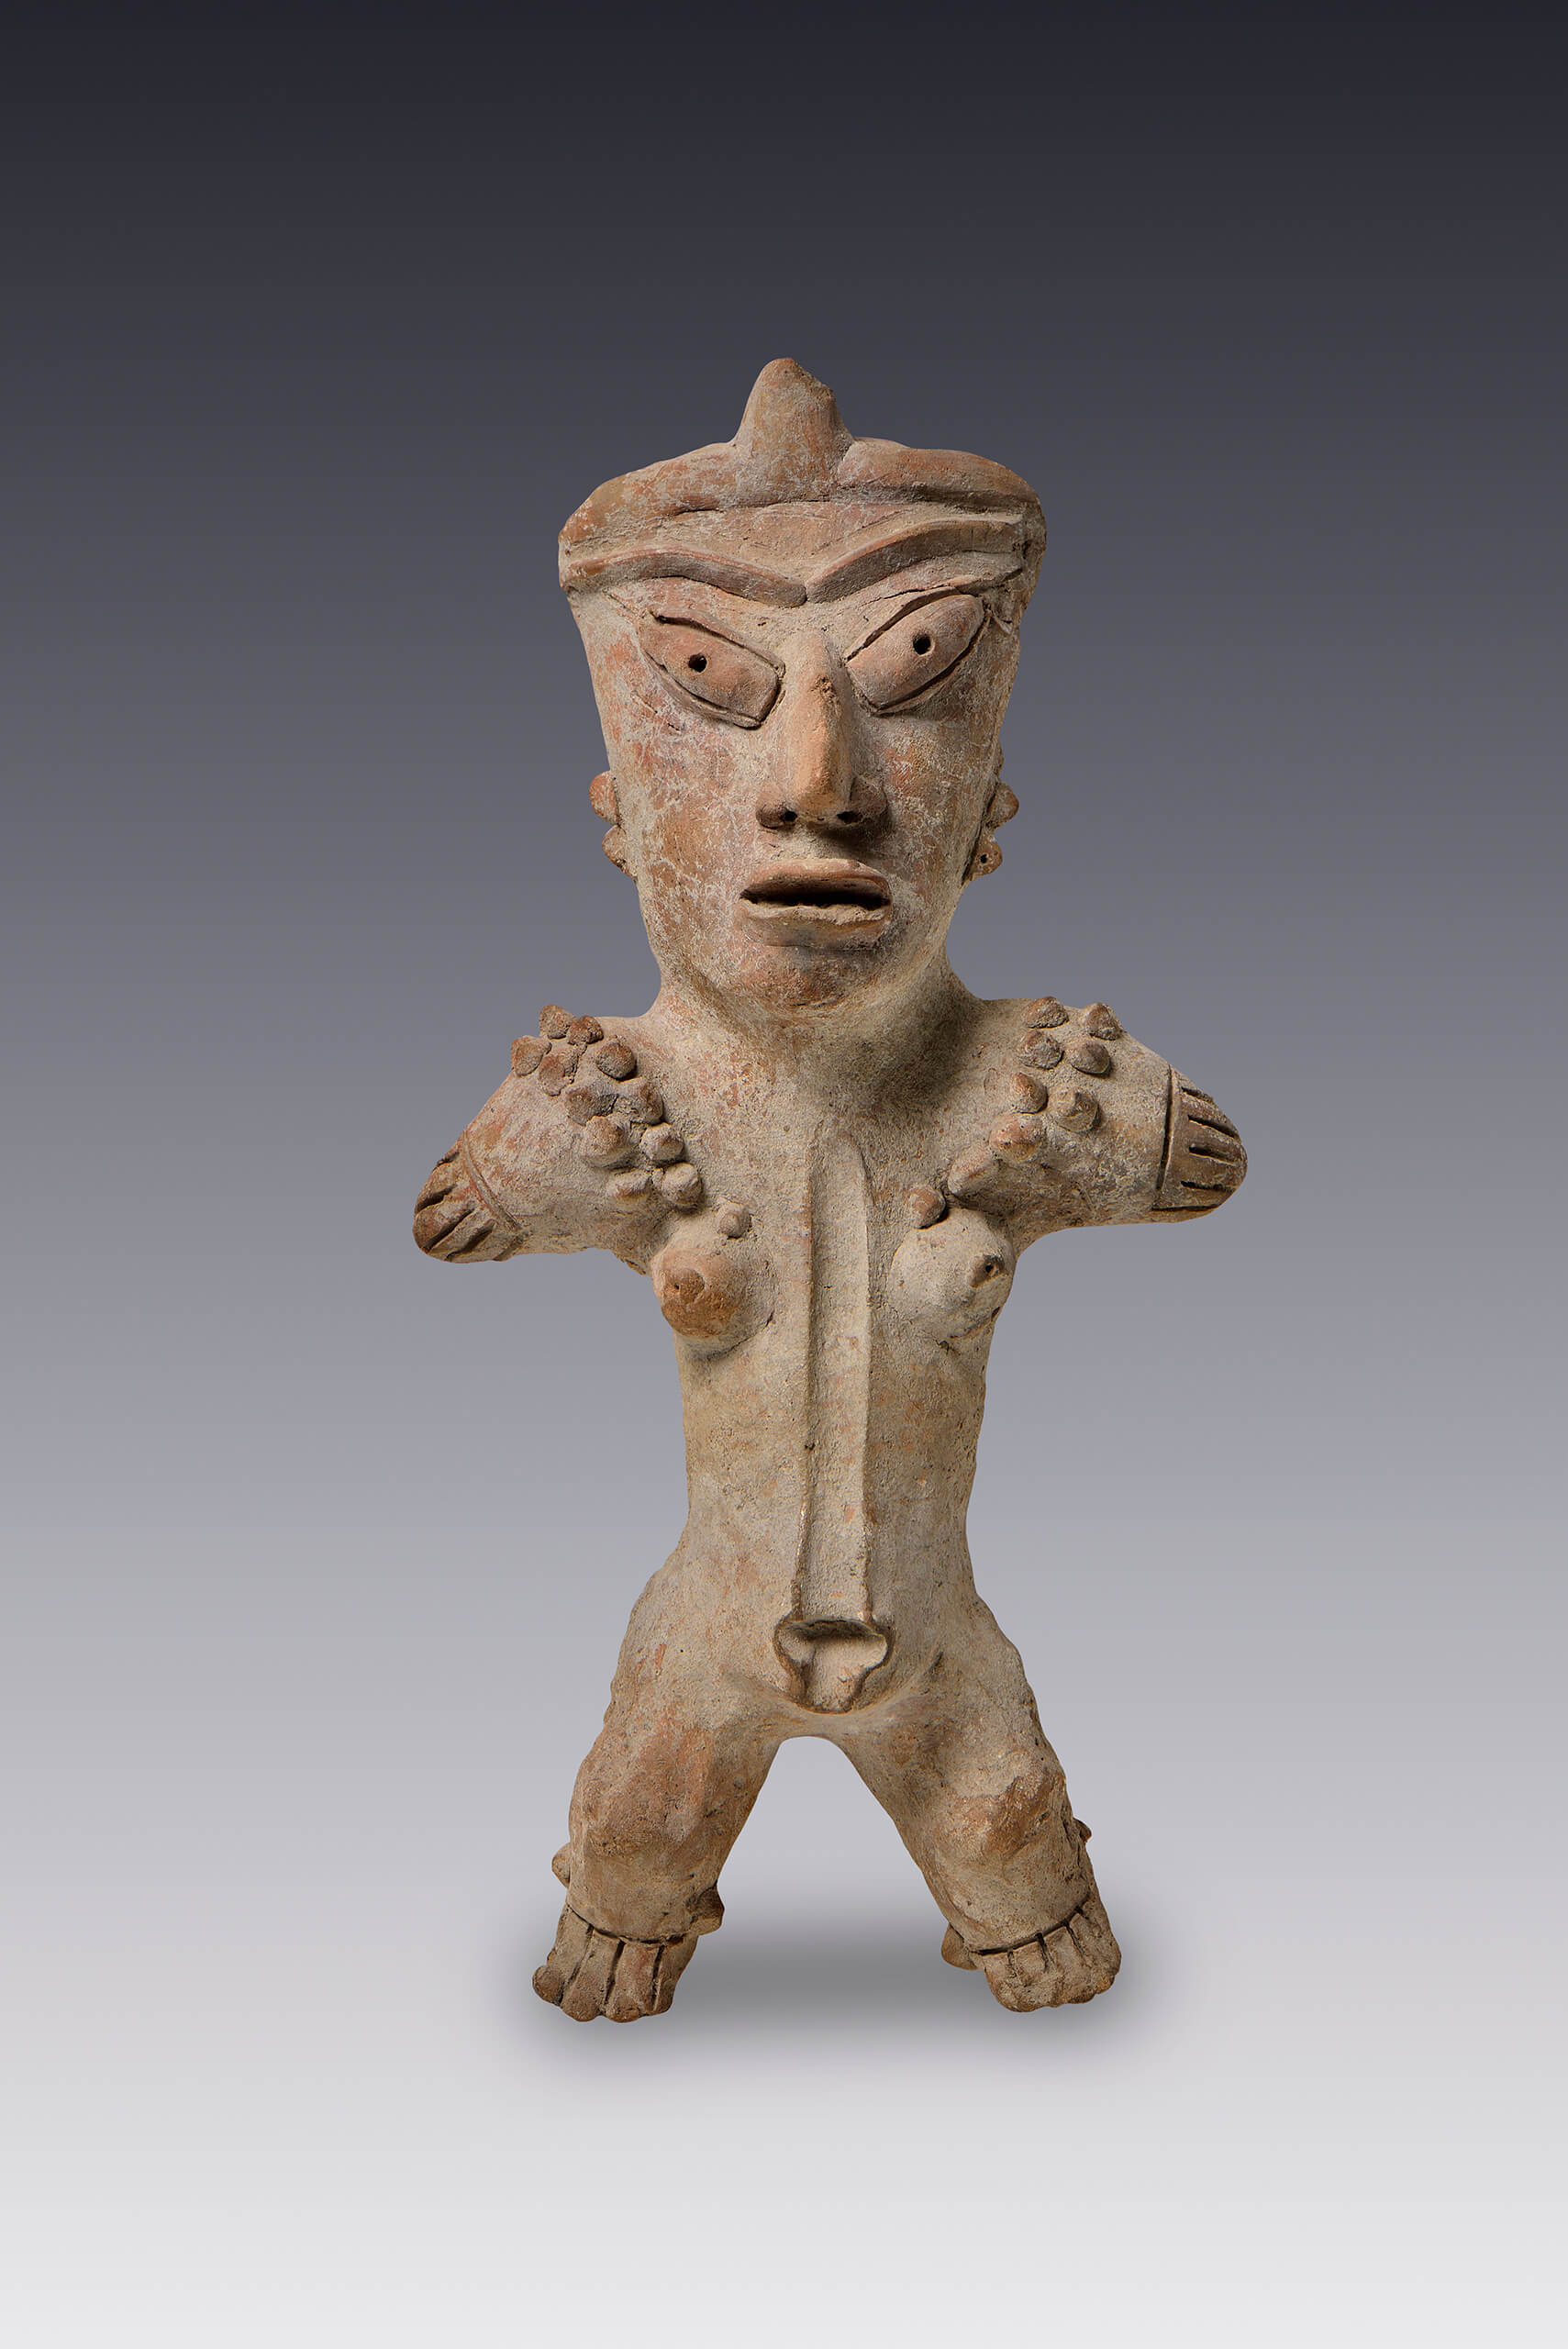 Figura antropomorfa con incisión en tórax y abdomen | El México antiguo. Salas de Arte Prehispánico | Museo Amparo, Puebla